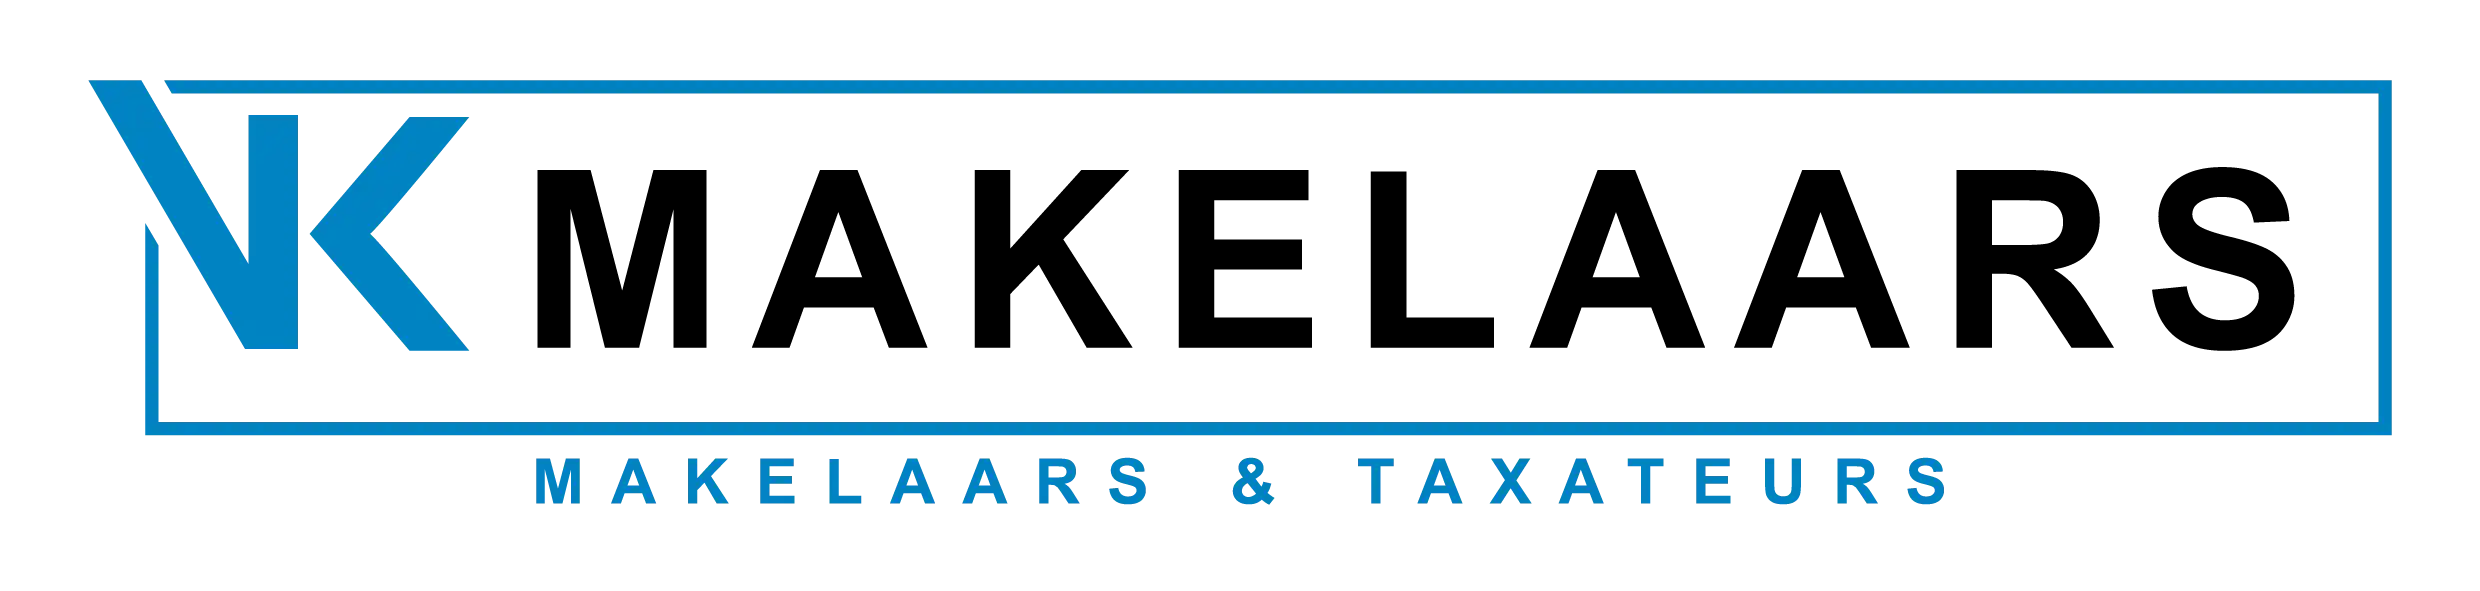 Logo van Vk Makelaars&taxateurs